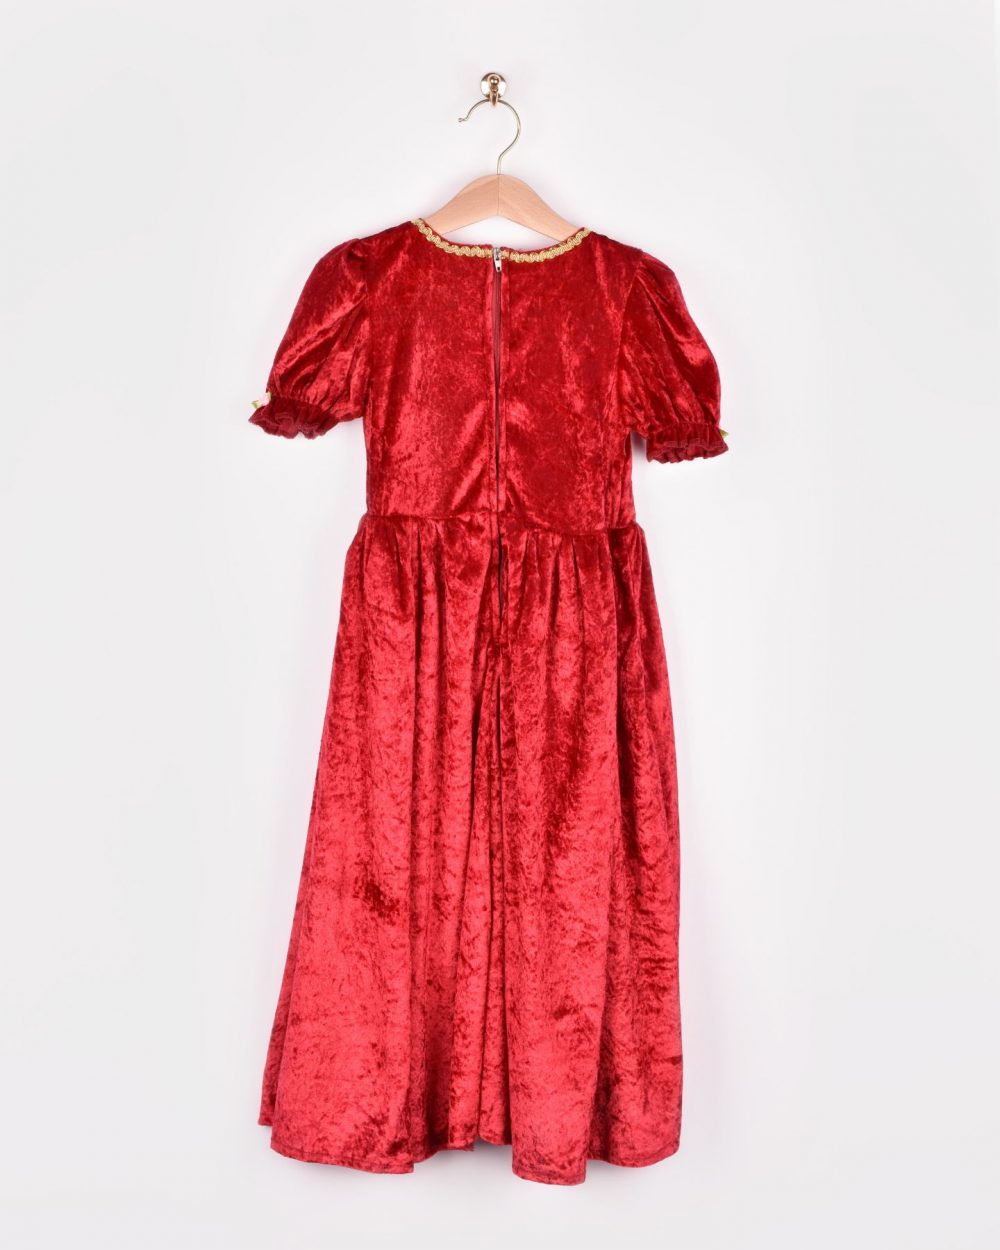 En röd prinsessklänning på en galge. På bilden visas klänningens baksida.